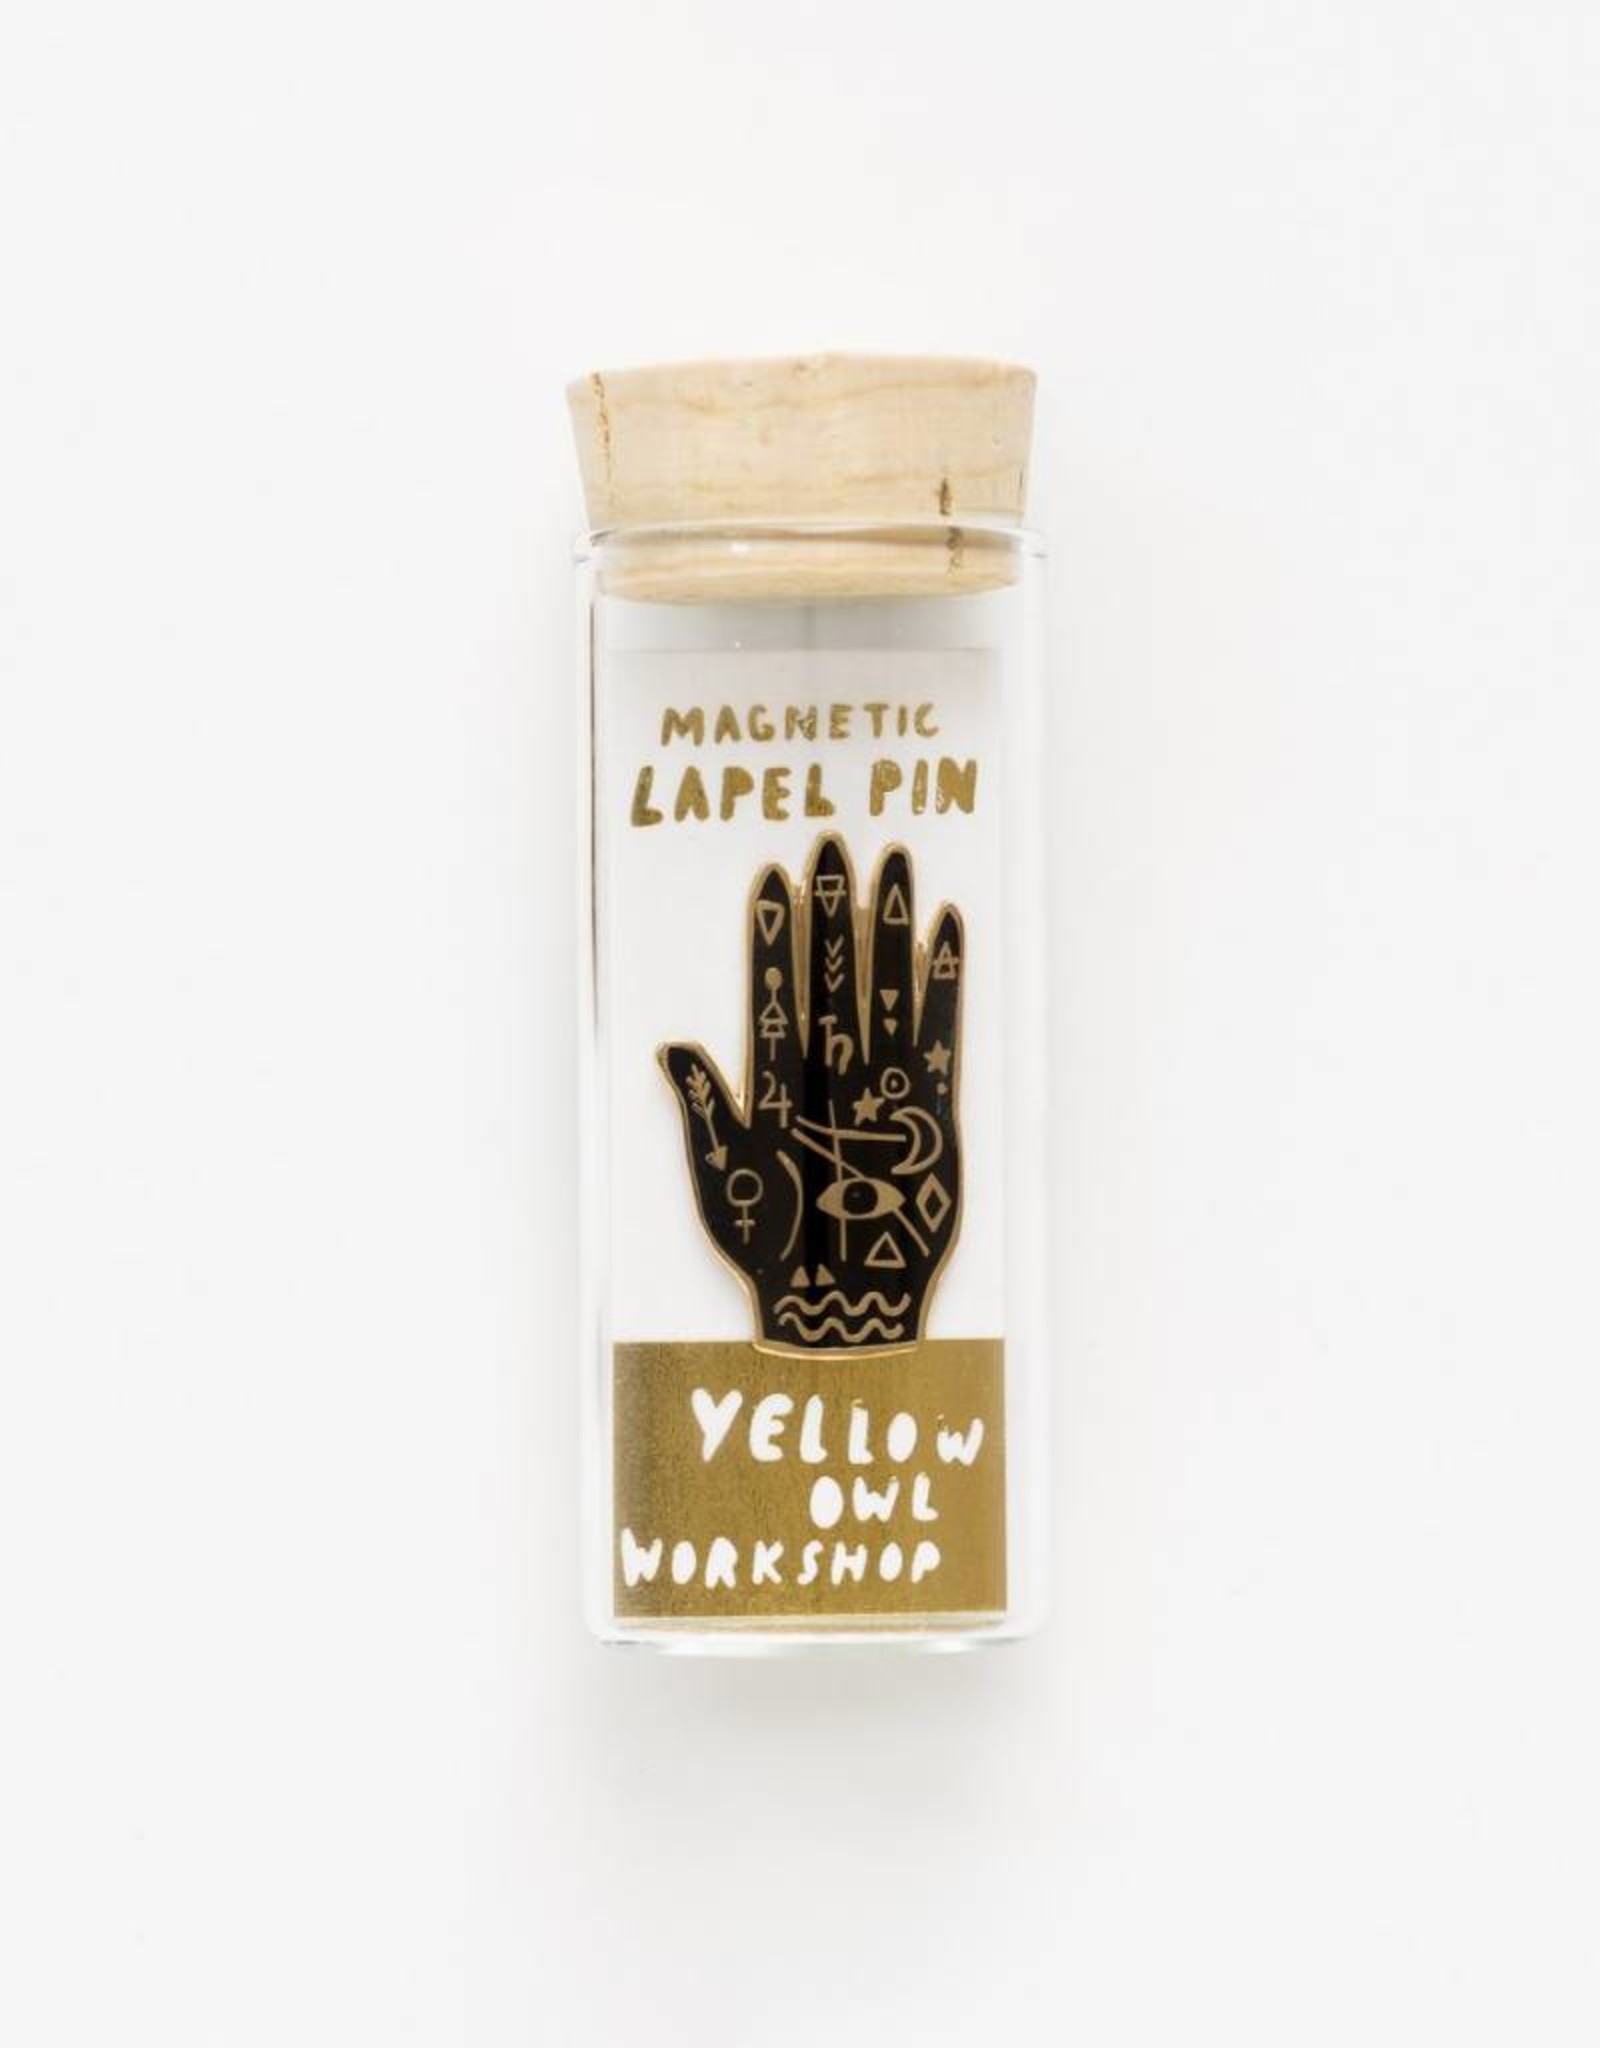 Yellow Owl Workshop Yellow Owl Workshop Magnetic Lapel Pin